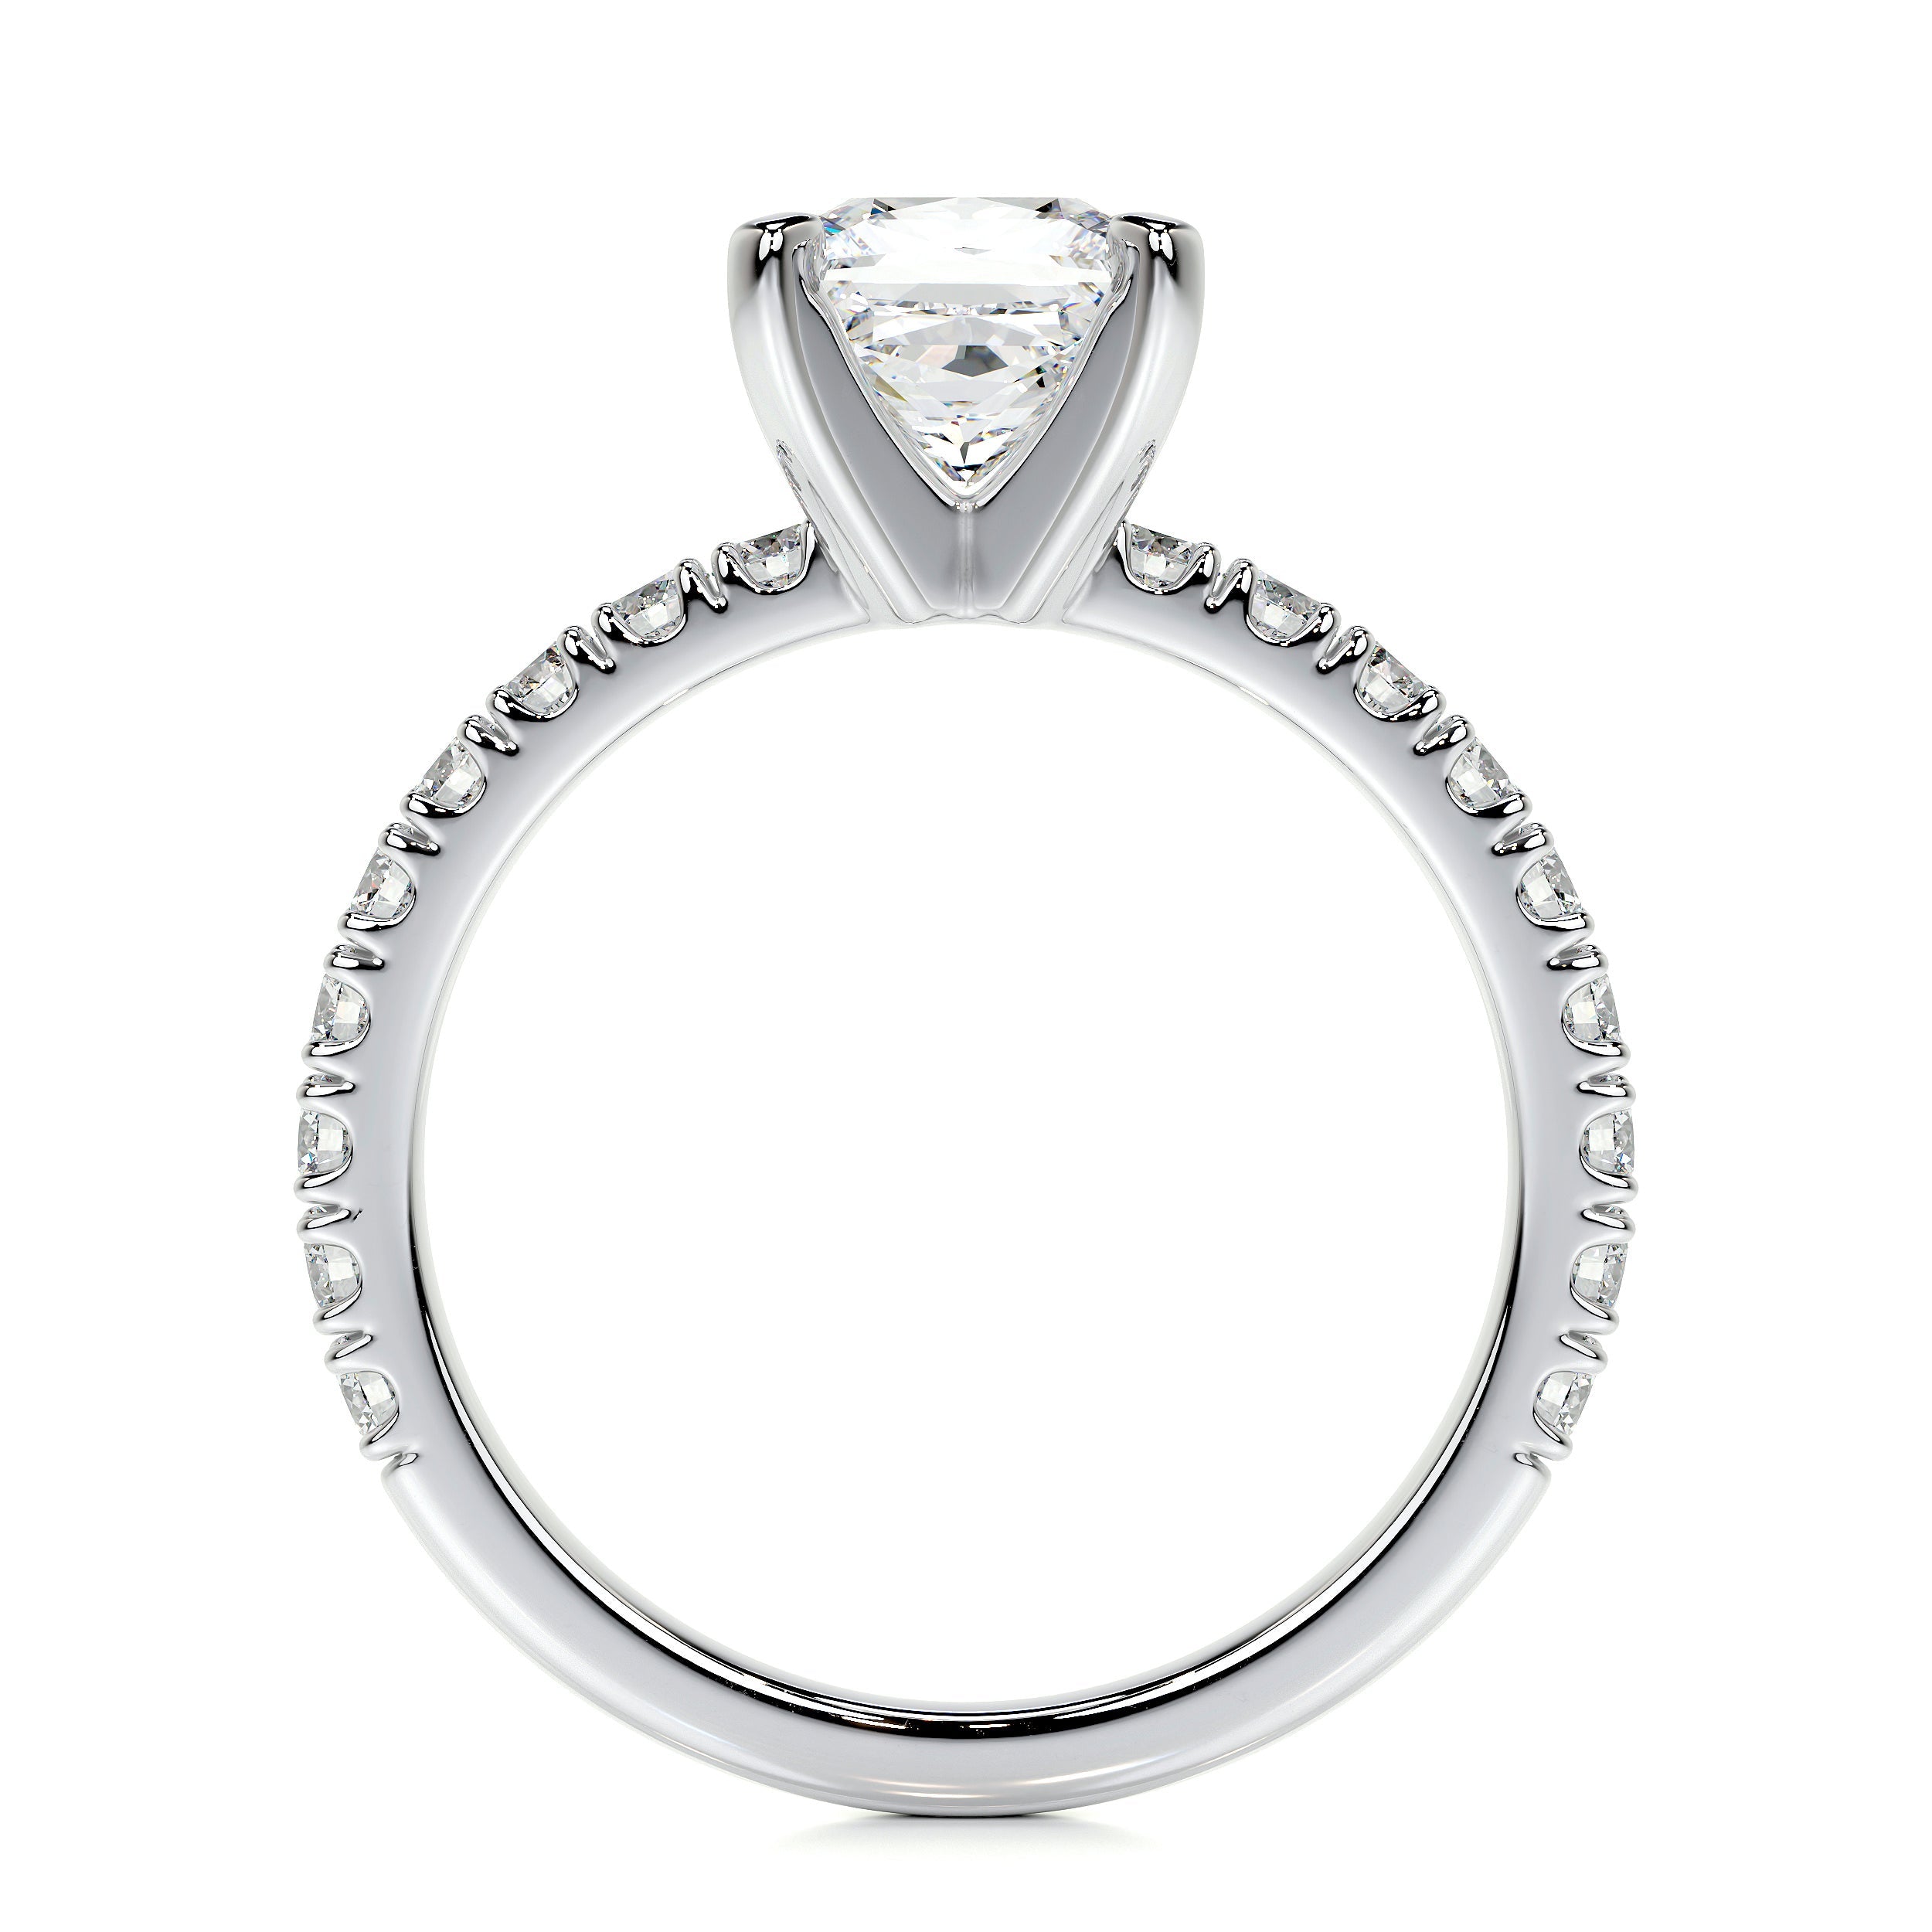 Blair Lab Grown Diamond Ring   (1.5 Carat) -18K White Gold